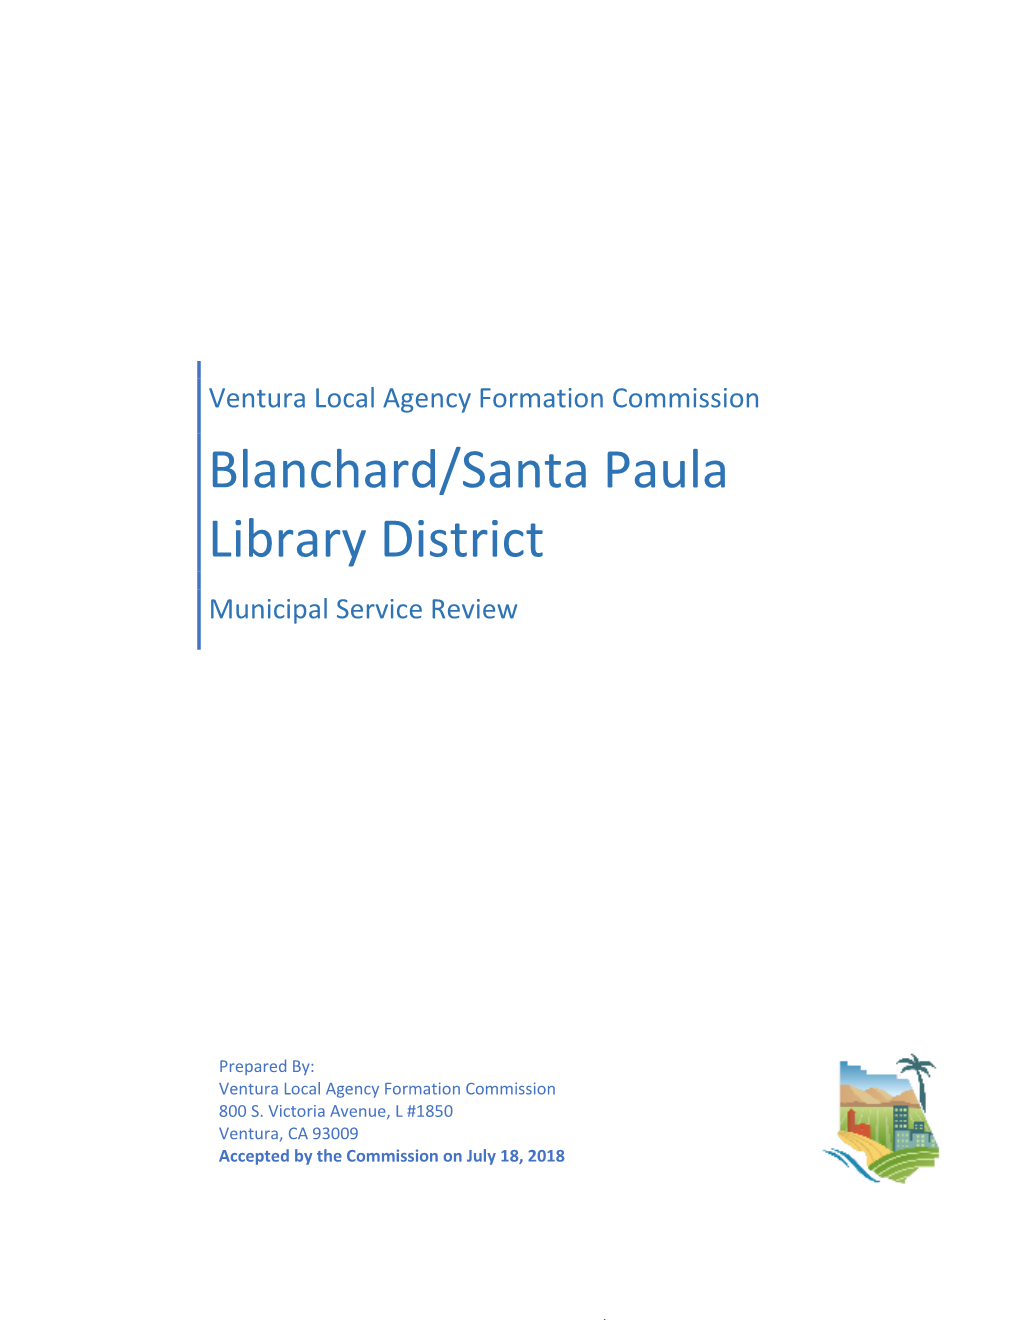 Blanchard/Santa Paula Library District Municipal Service Review